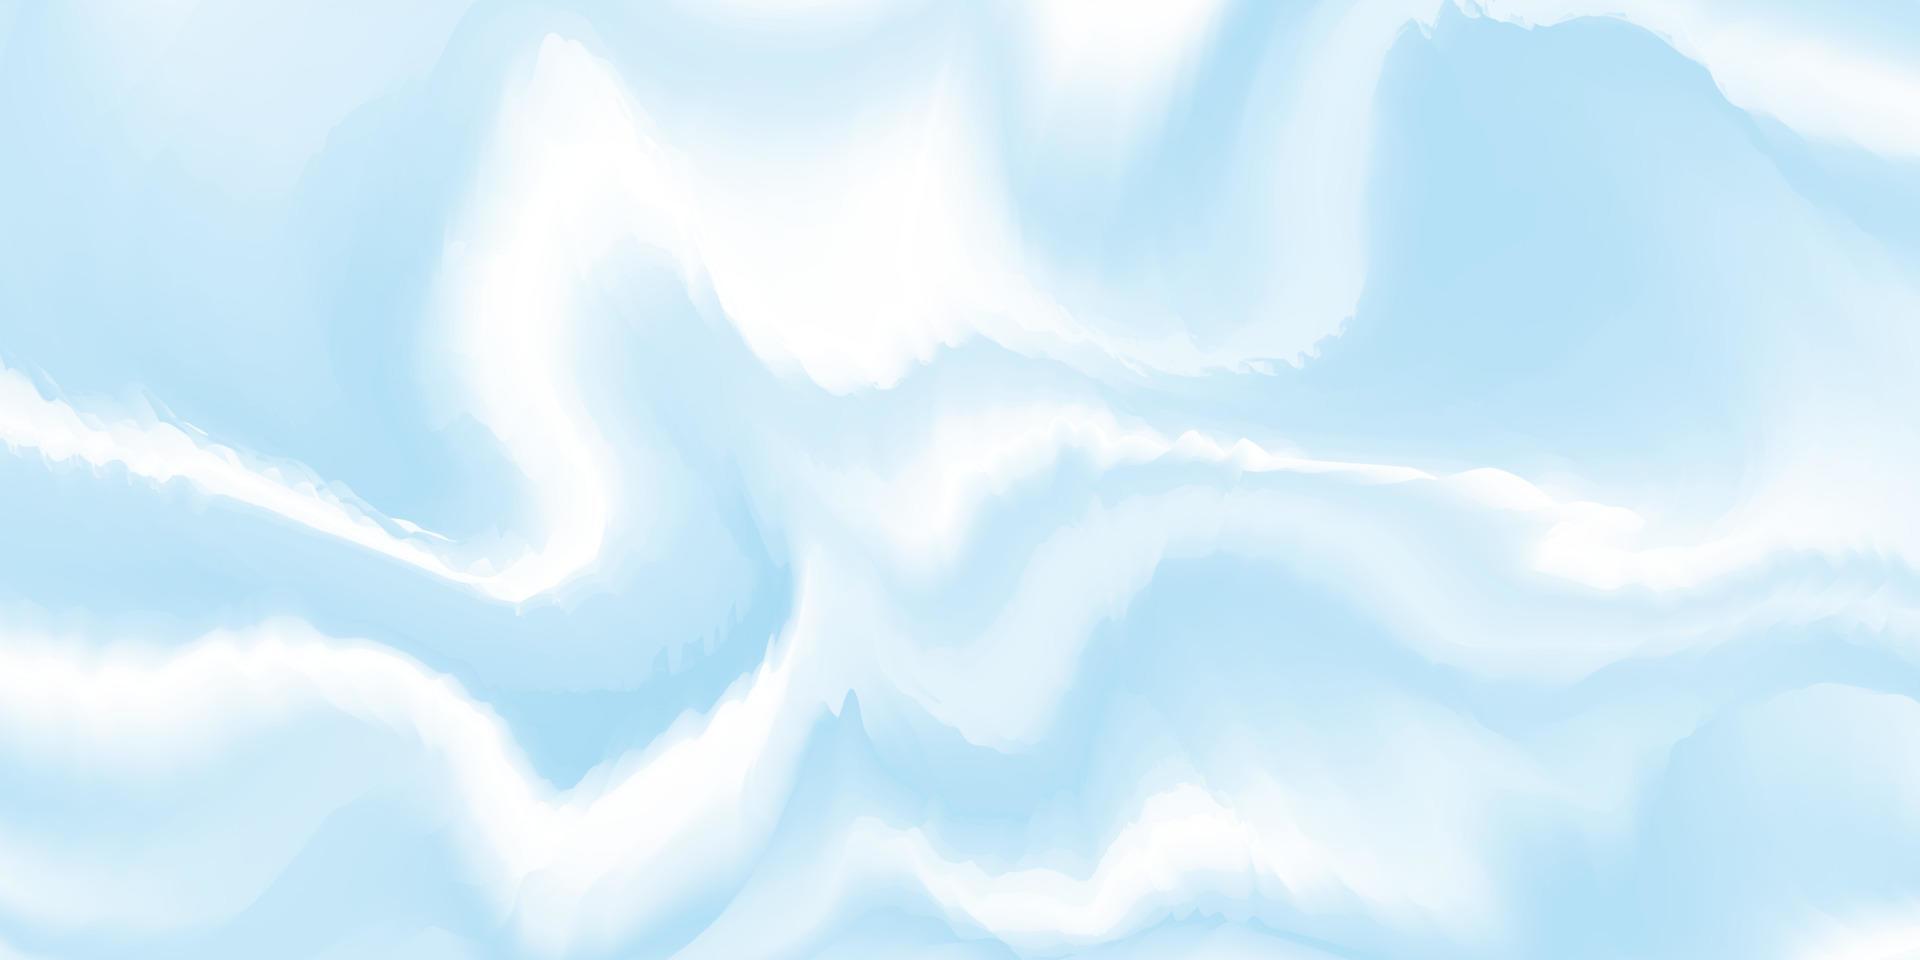 abstrakt blå bakgrund med vågor. blå och vit vågig textur. flytande marmor yta. vektor illustration.